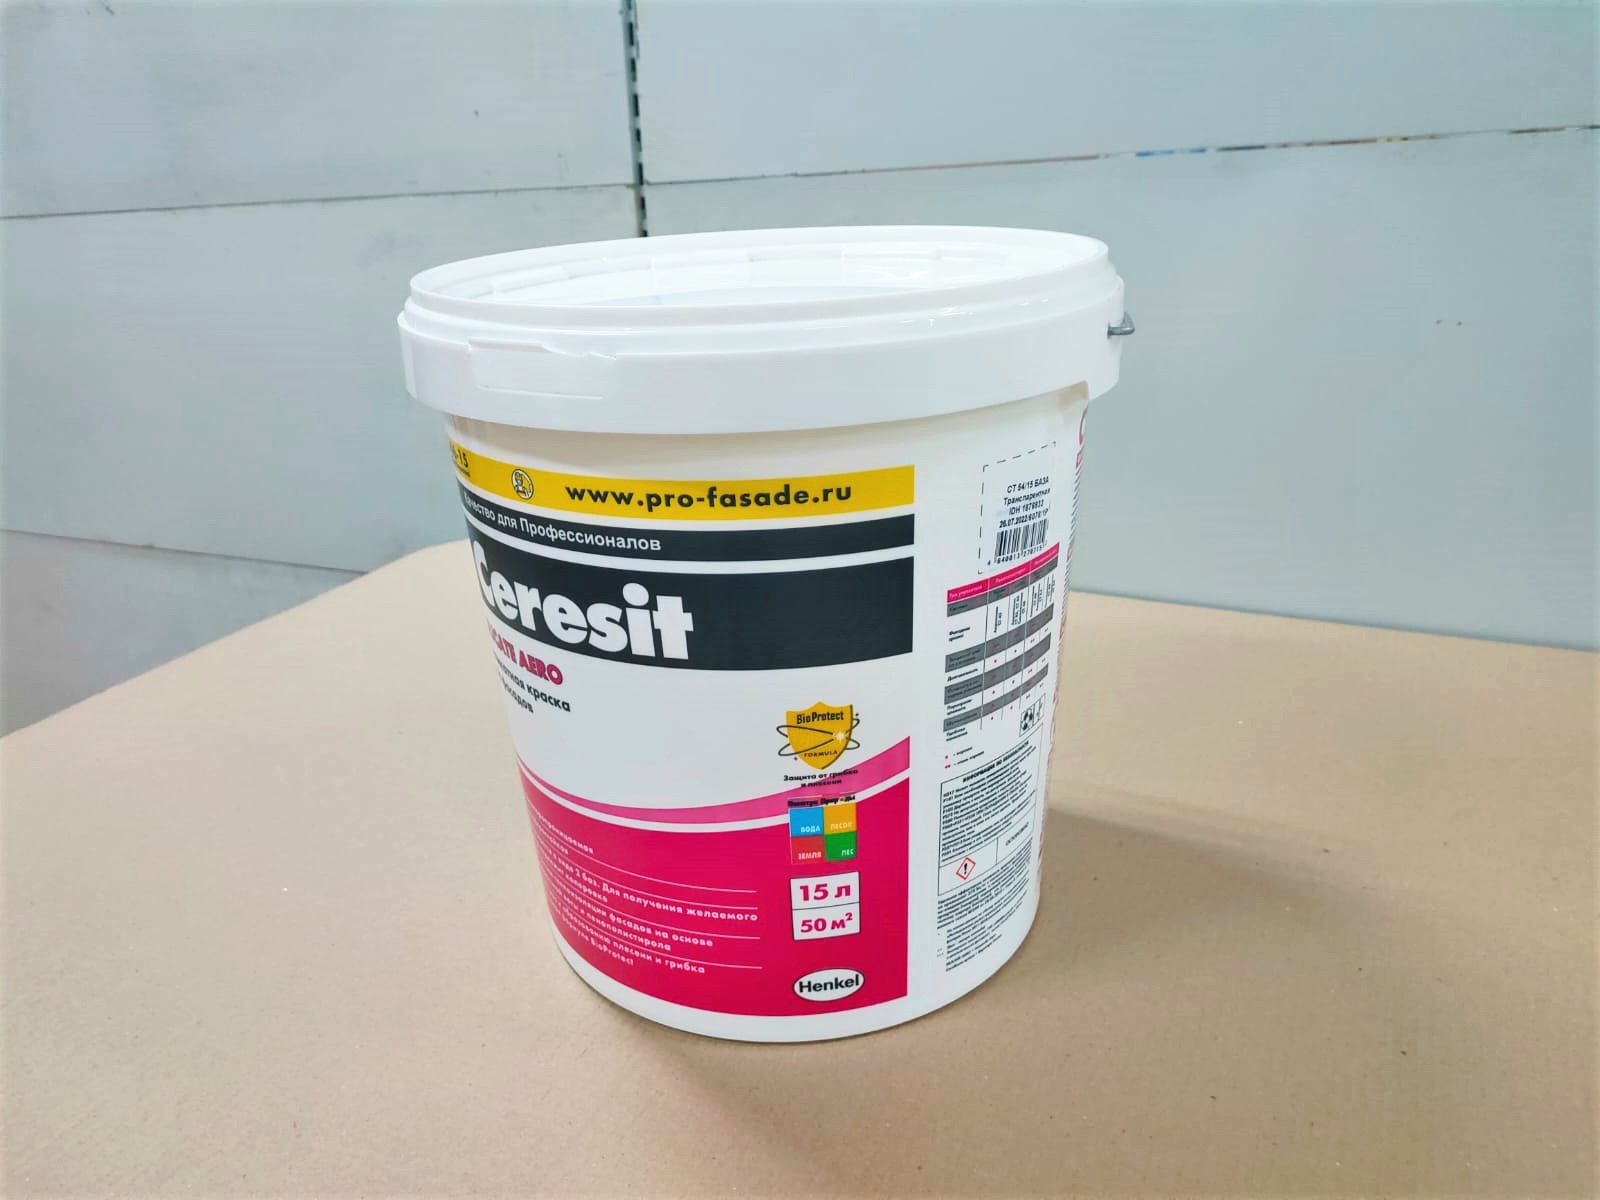 Краска Церезит (Ceresit) СТ 54 силикатная для наружных работ, 15 л